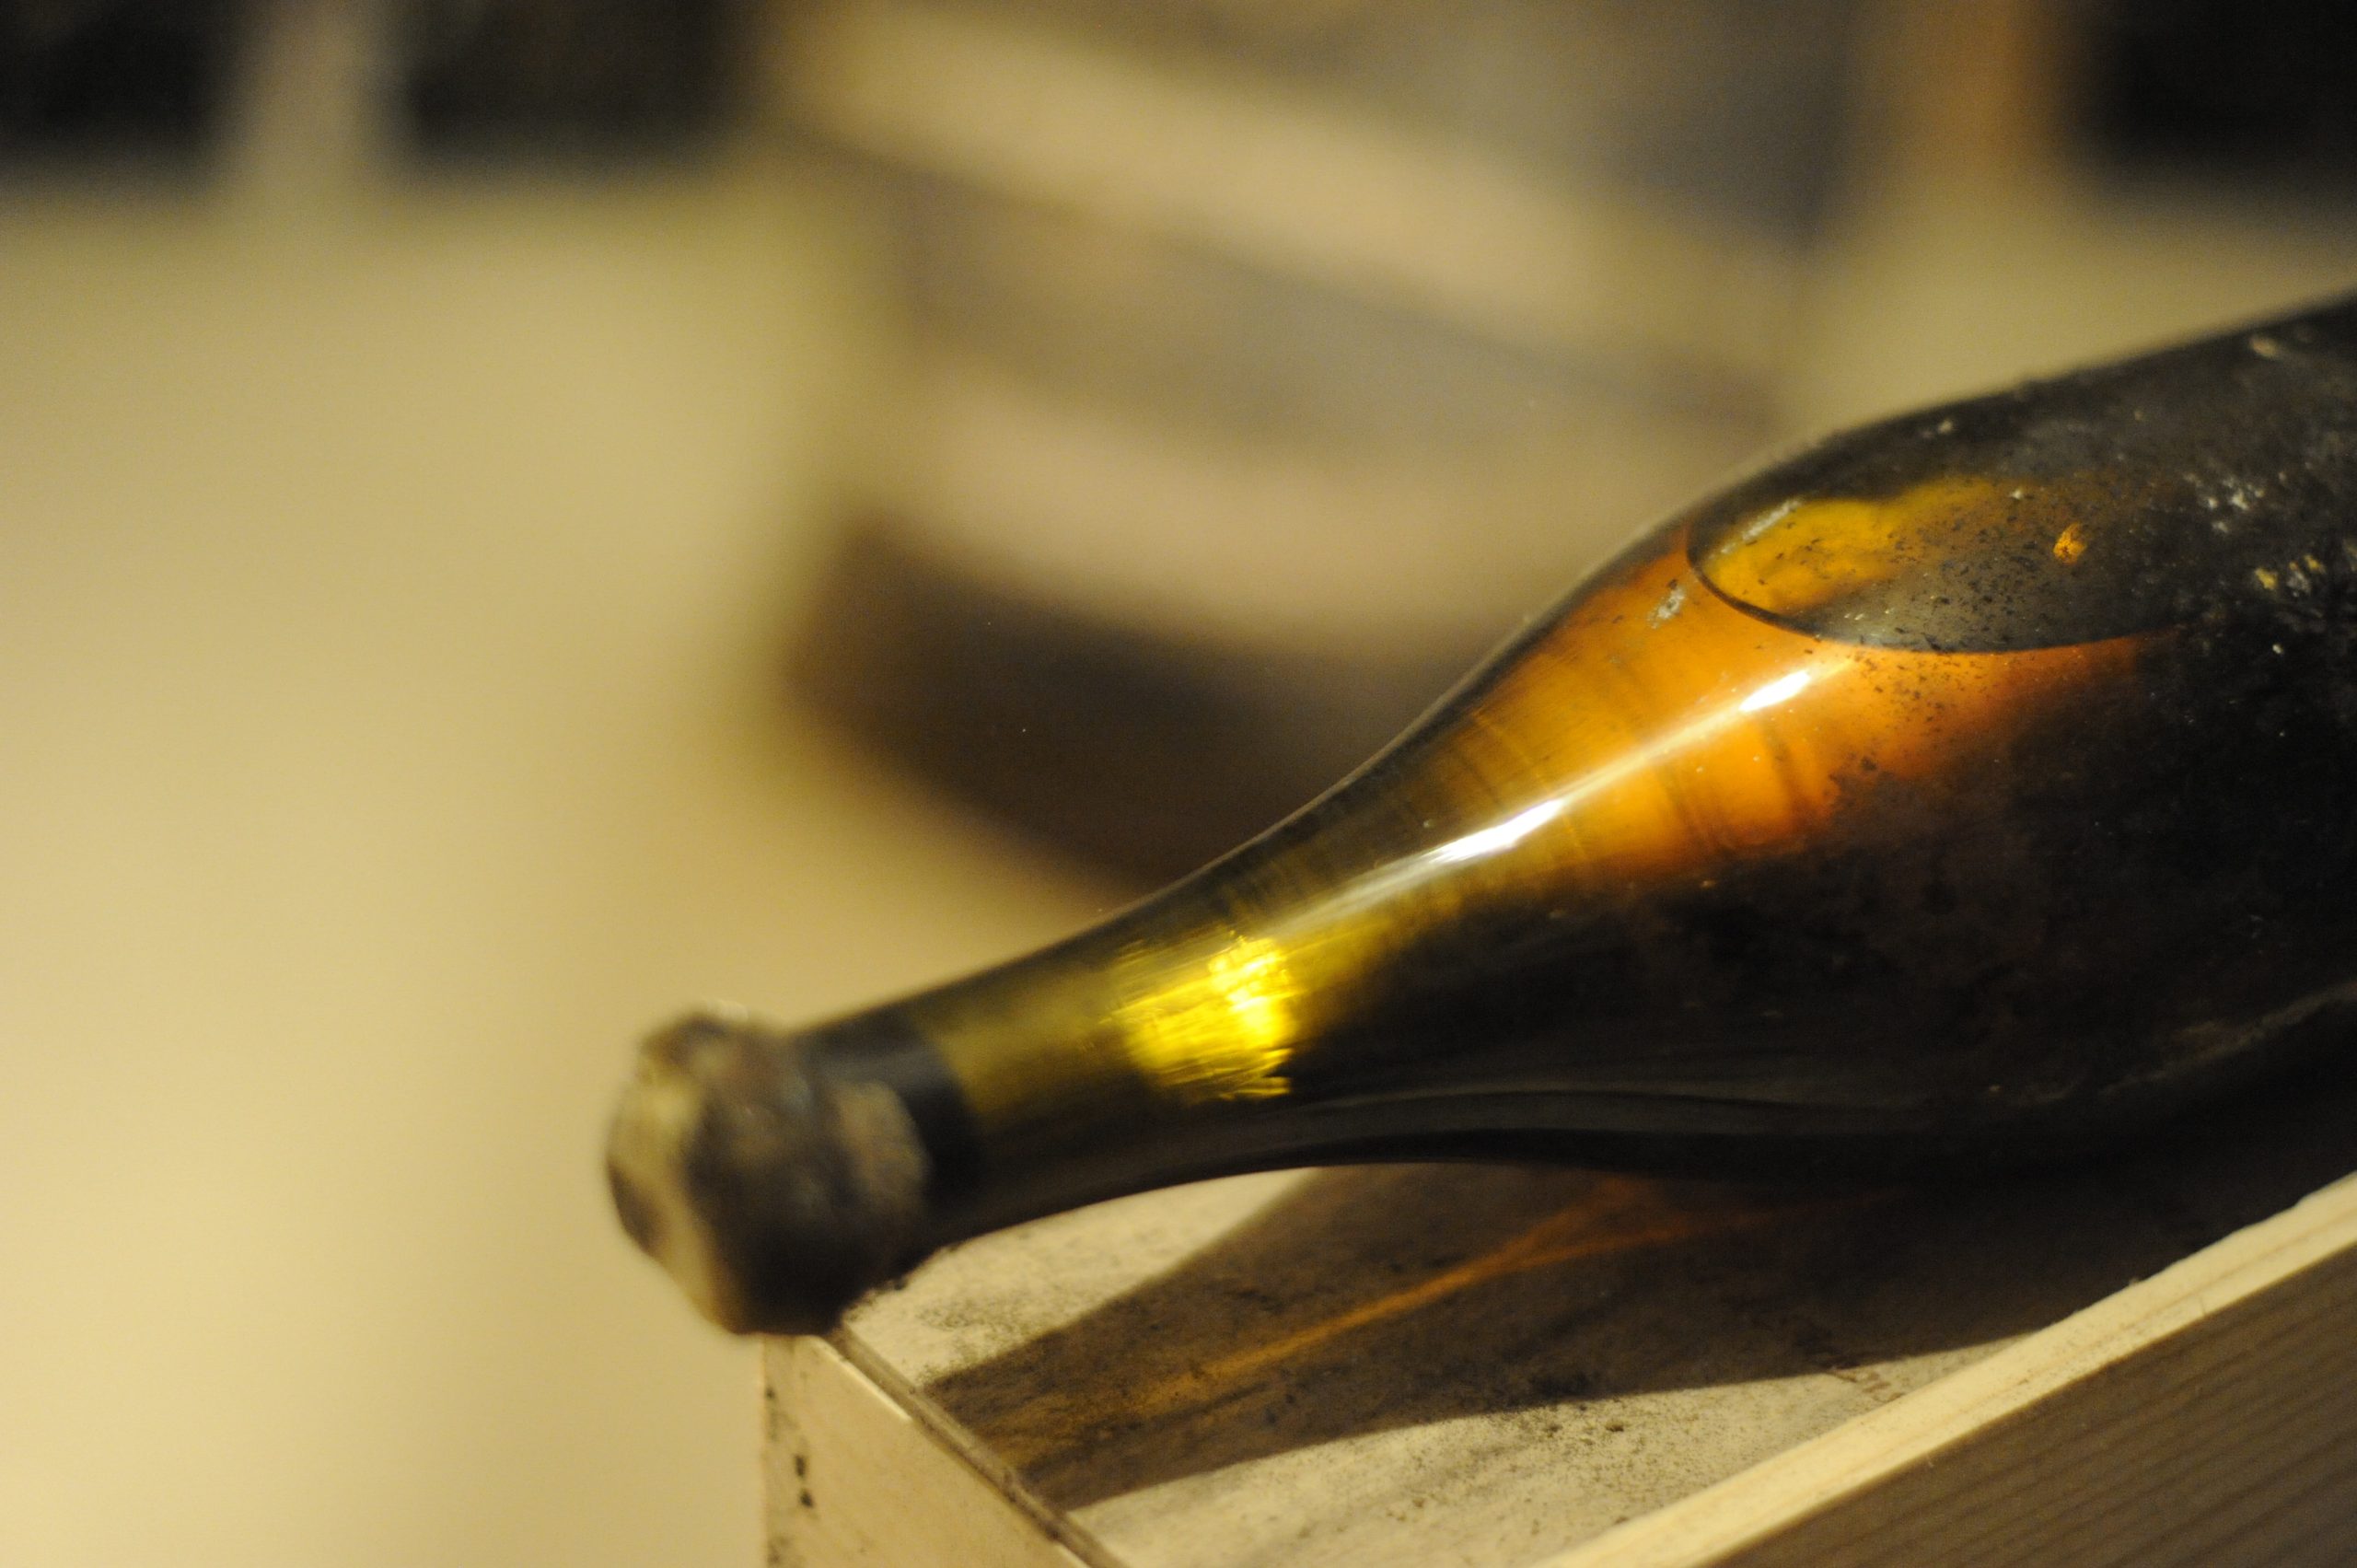 Le cépage à l'origine du vin jaune du Jura vieux d'au moins 900 ans